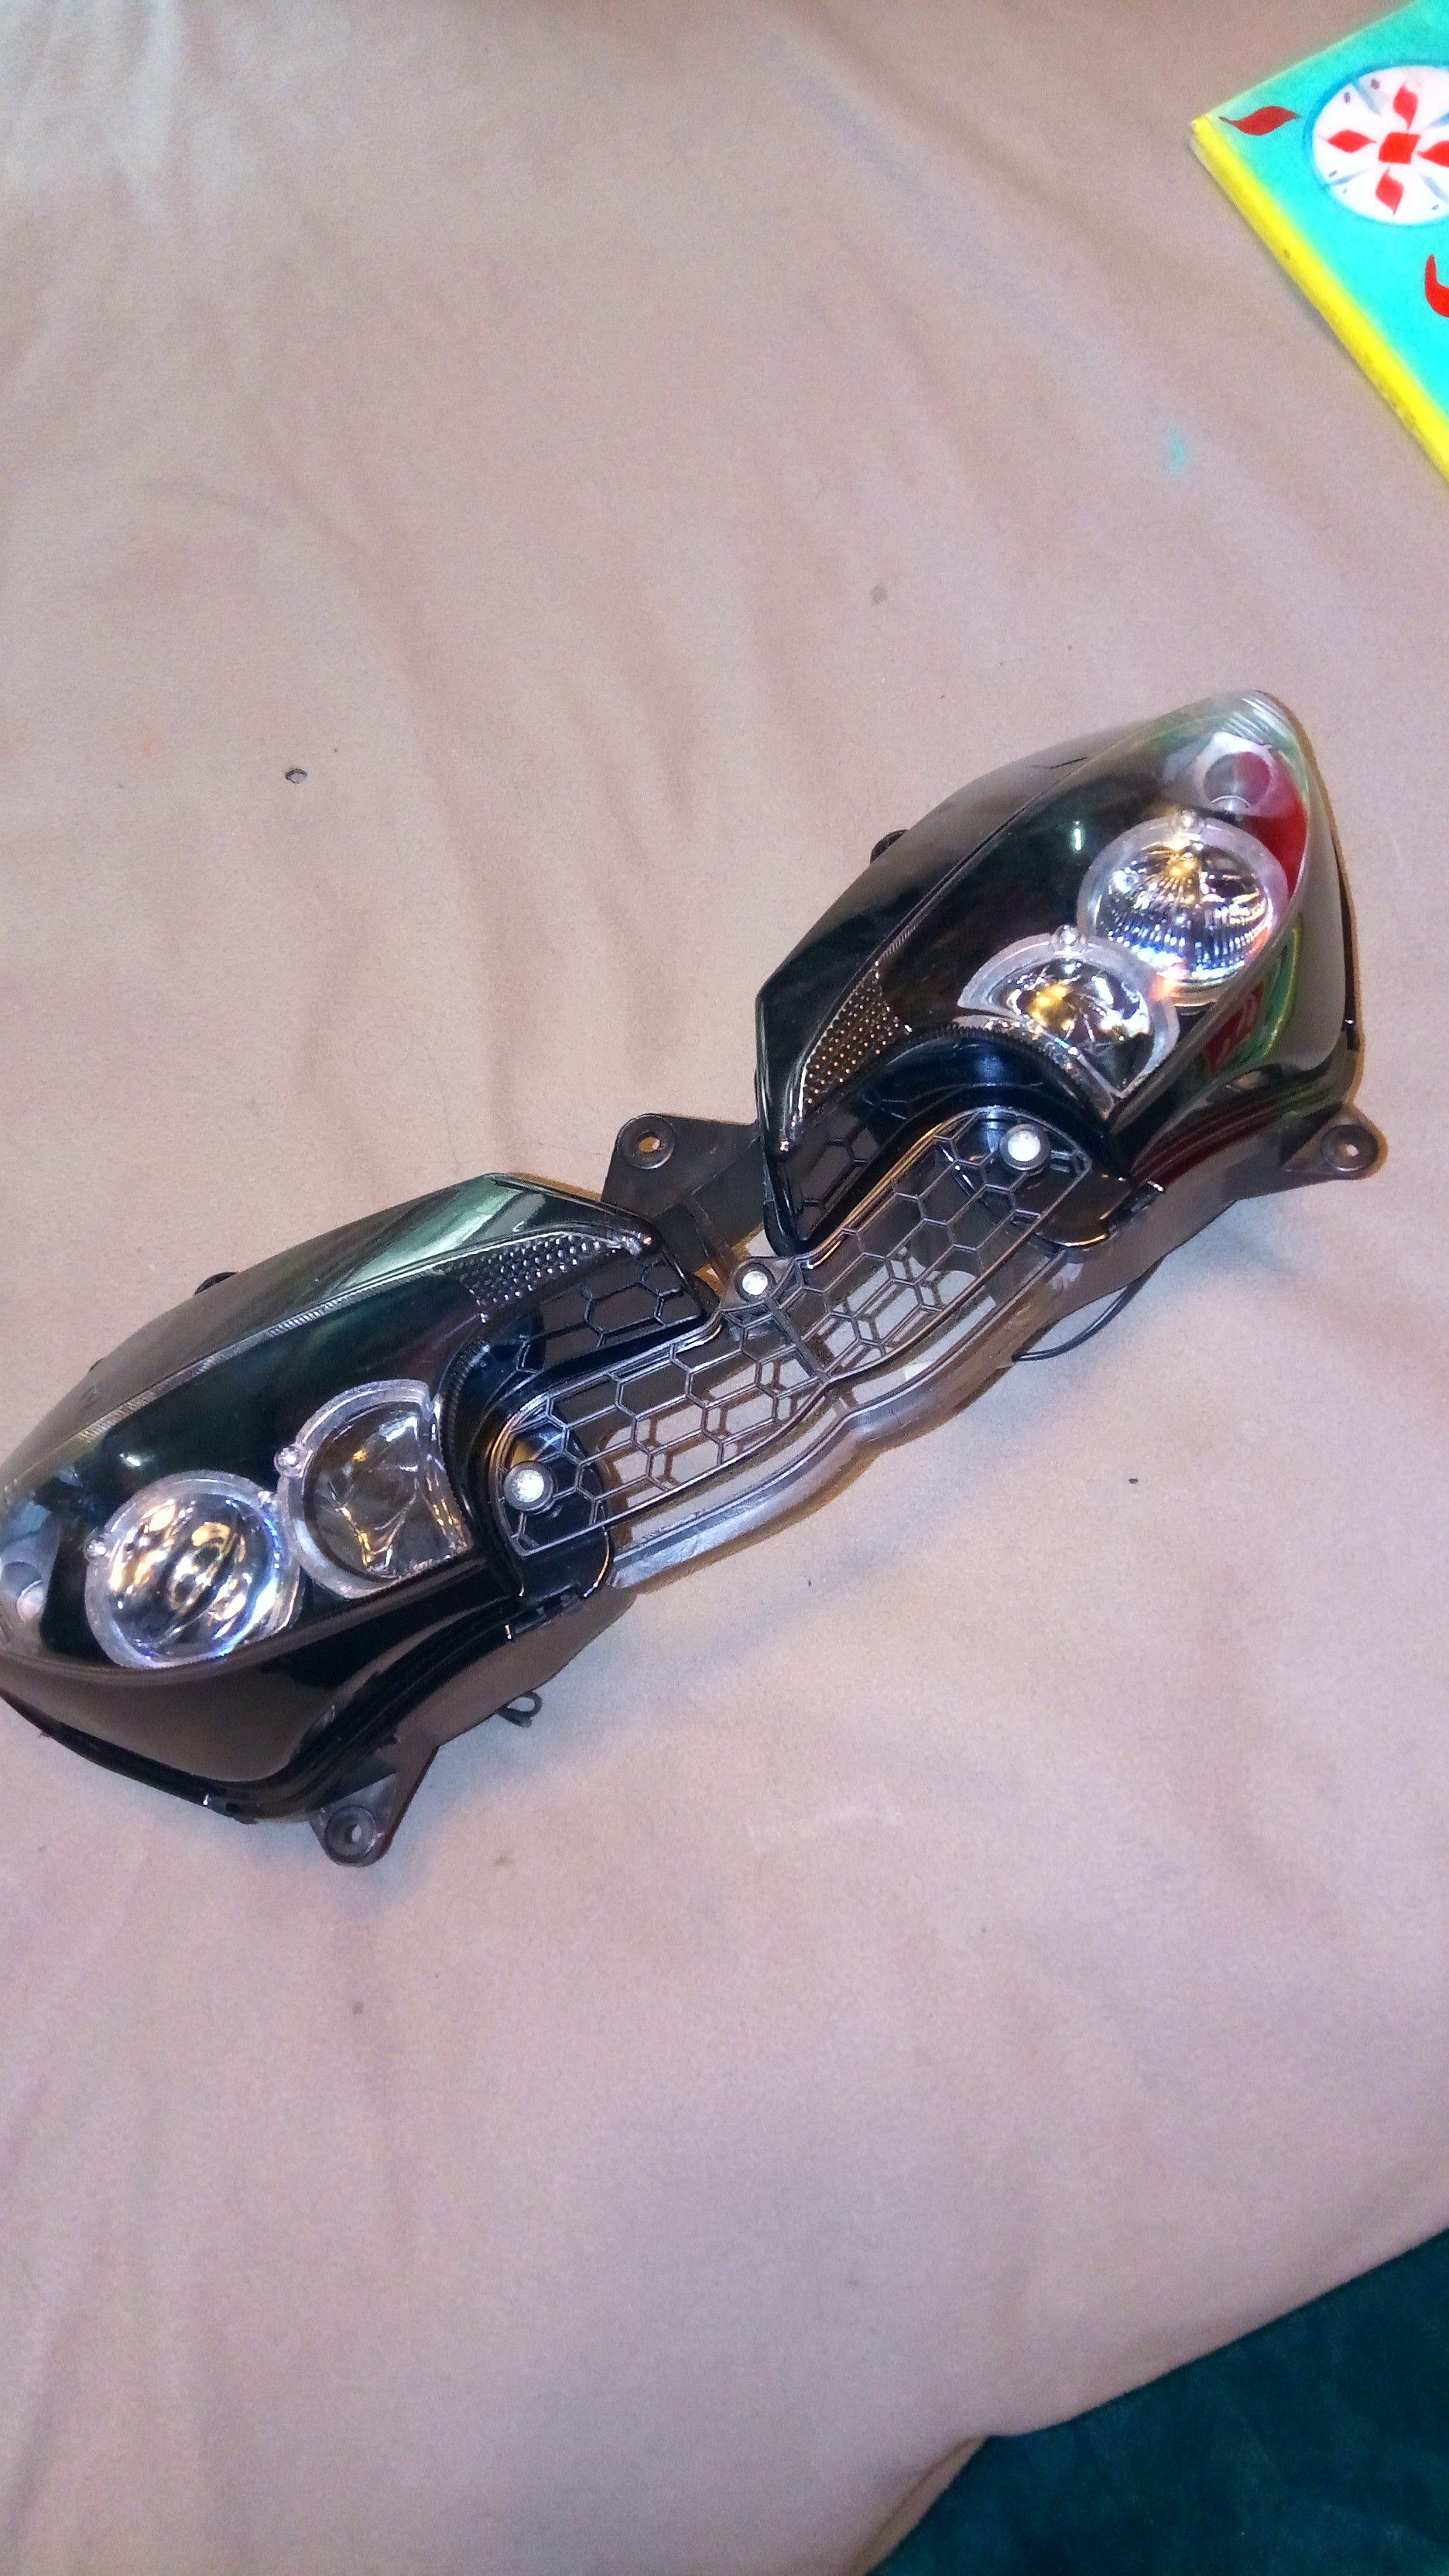 Yamaha R6 headlights